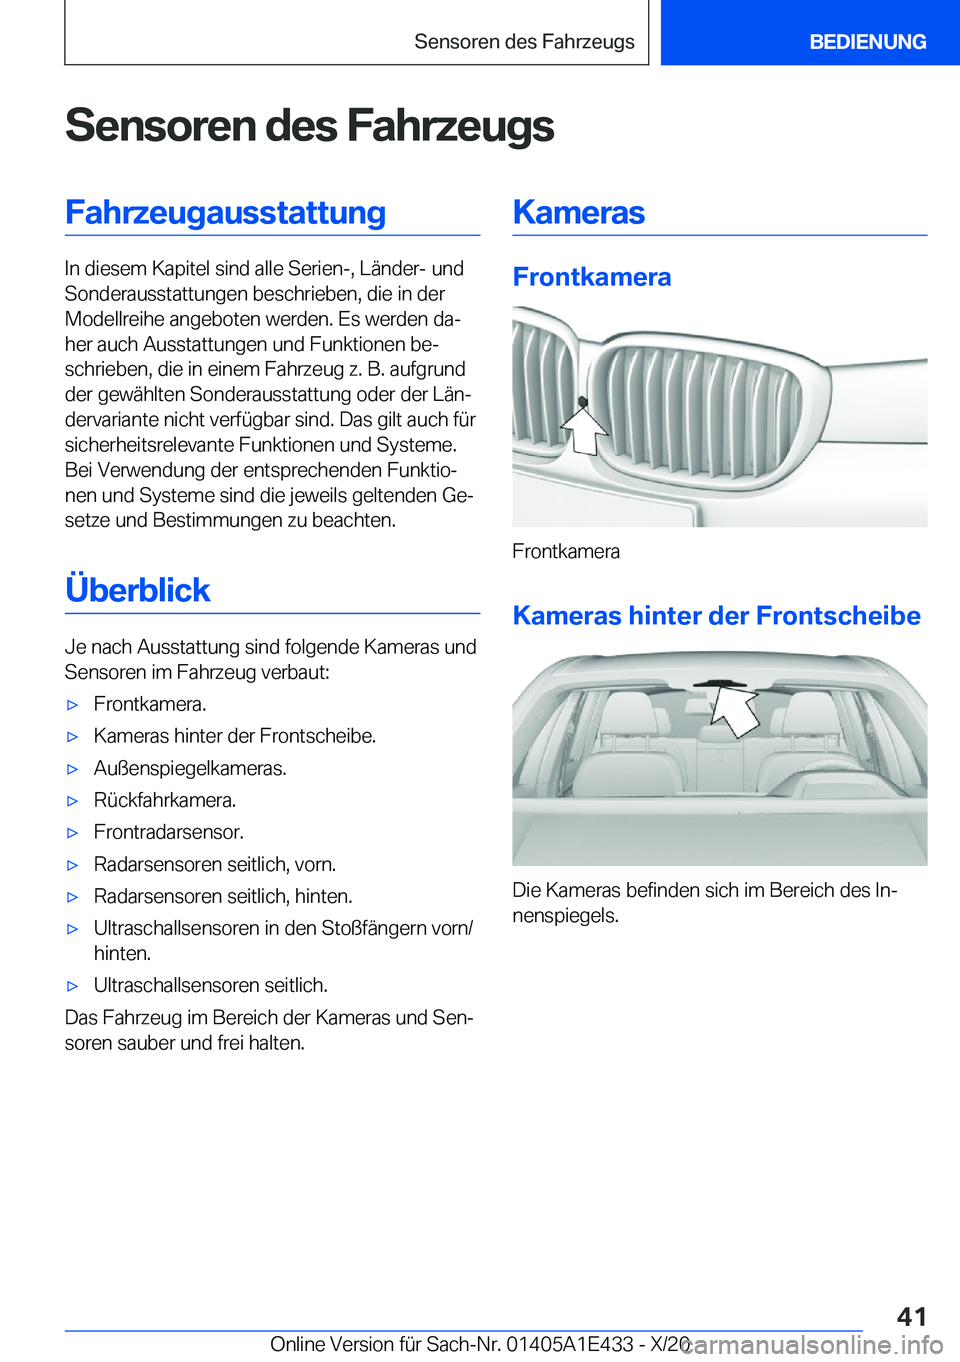 BMW M3 2021  Betriebsanleitungen (in German) �S�e�n�s�o�r�e�n��d�e�s��F�a�h�r�z�e�u�g�s�F�a�h�r�z�e�u�g�a�u�s�s�t�a�t�t�u�n�g
�I�n��d�i�e�s�e�m��K�a�p�i�t�e�l��s�i�n�d��a�l�l�e��S�e�r�i�e�n�-�,��L�